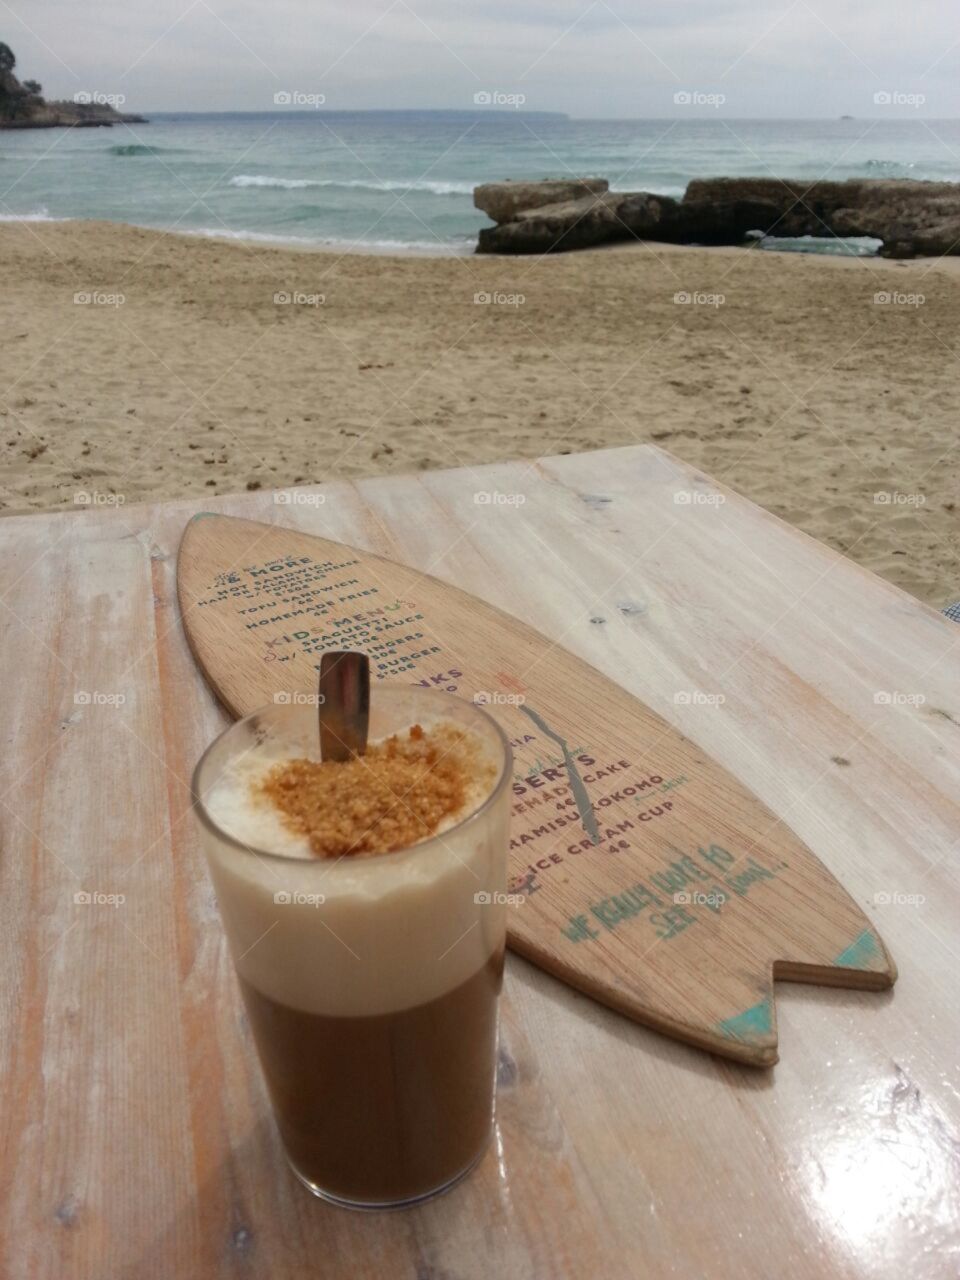 Coffee break by the sea.